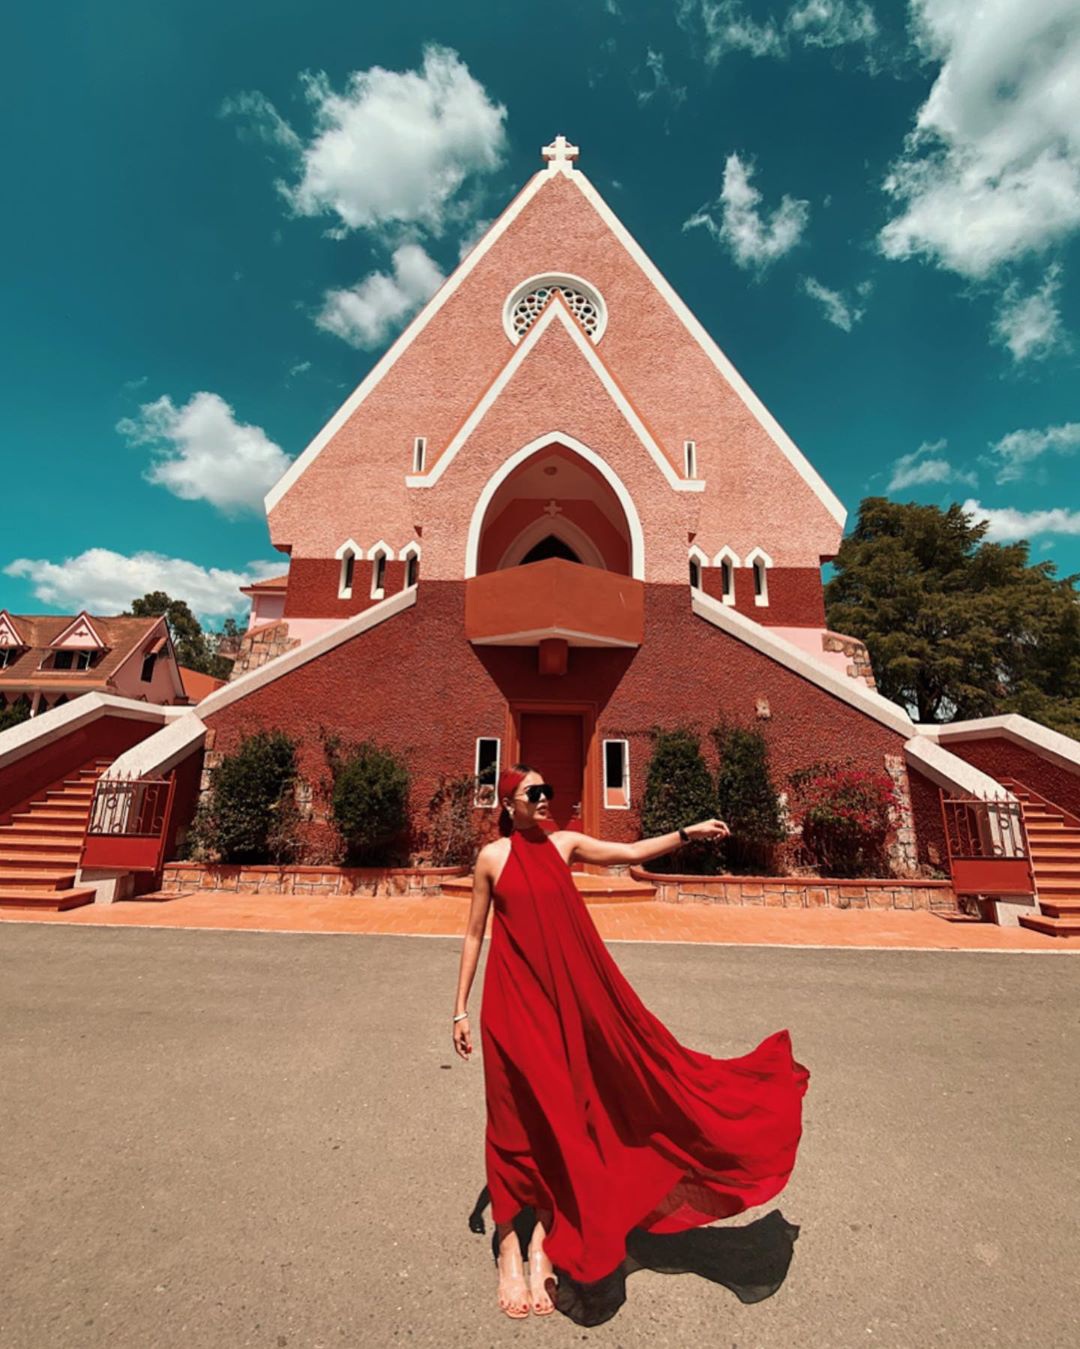 'Chụp cháy máy' ở 3 nhà thờ màu hồng đẹp nhất Việt Nam - Ảnh 5.